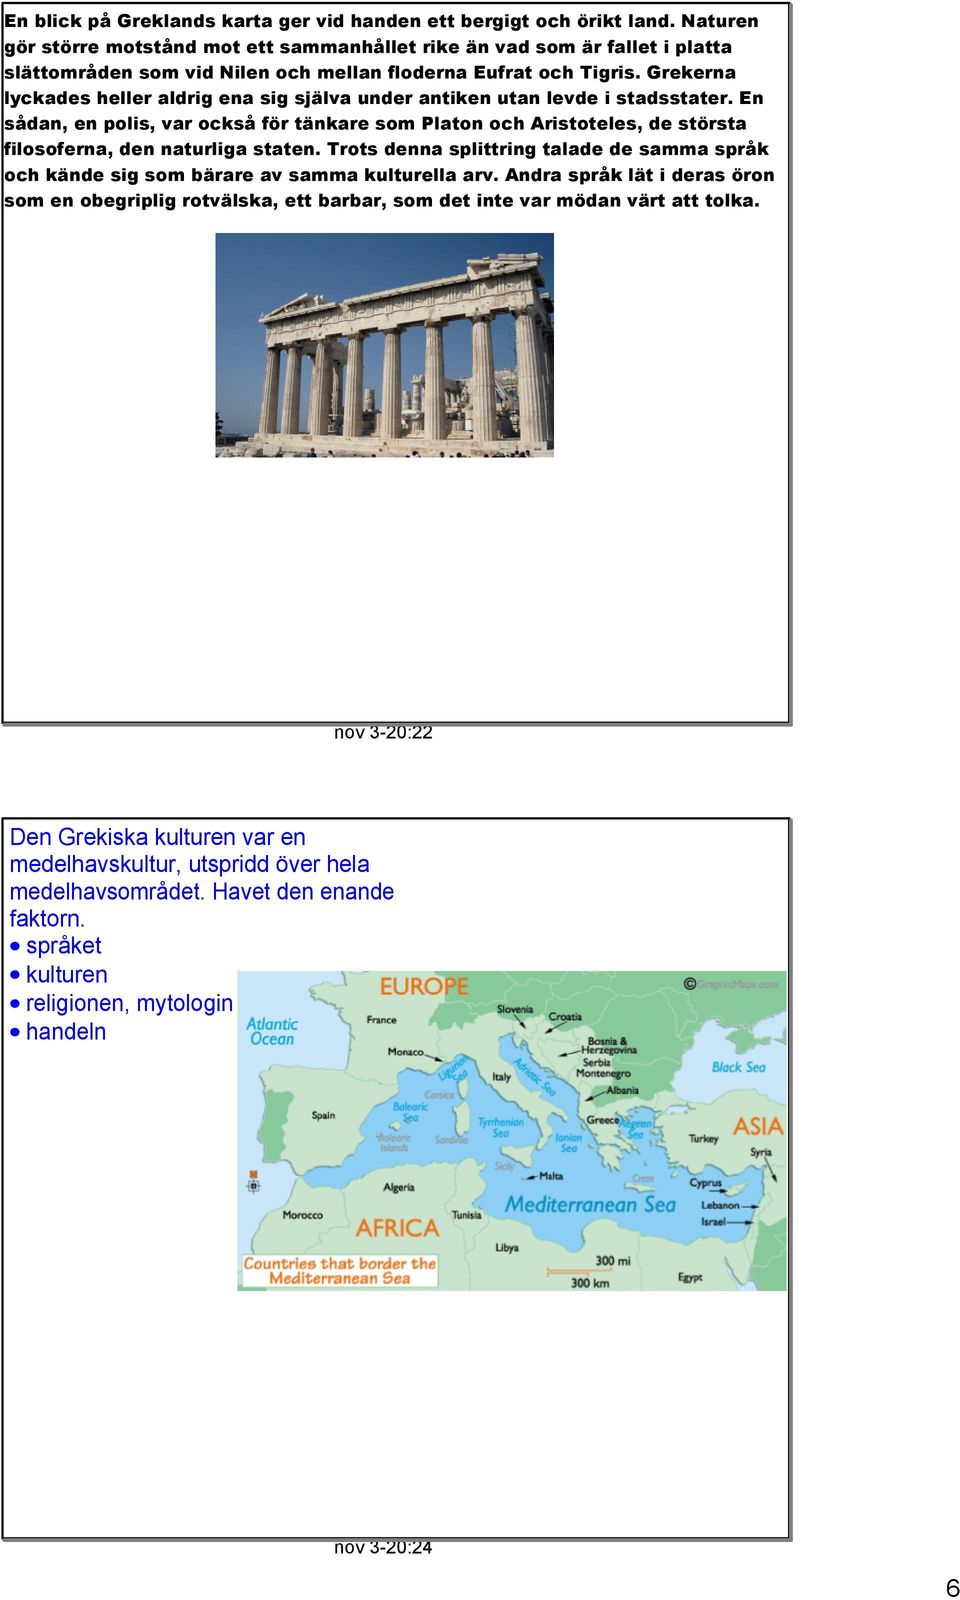 Grekerna lyckades heller aldrig ena sig själva under antiken utan levde i stadsstater.